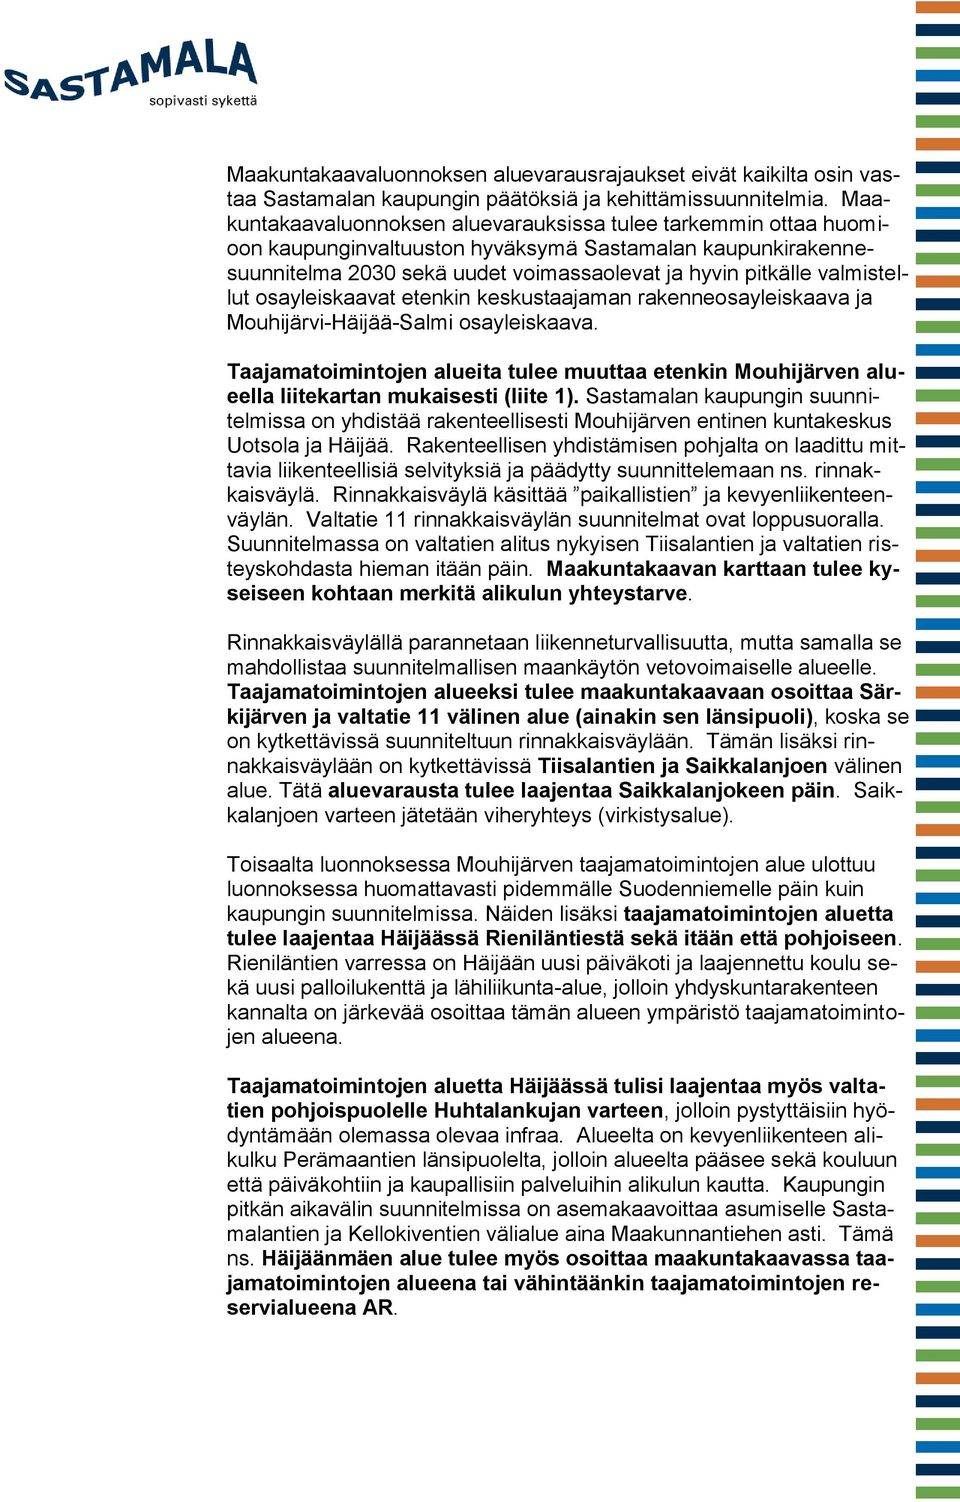 valmistellut osayleiskaavat etenkin keskustaajaman rakenneosayleiskaava ja Mouhijärvi-Häijää-Salmi osayleiskaava.